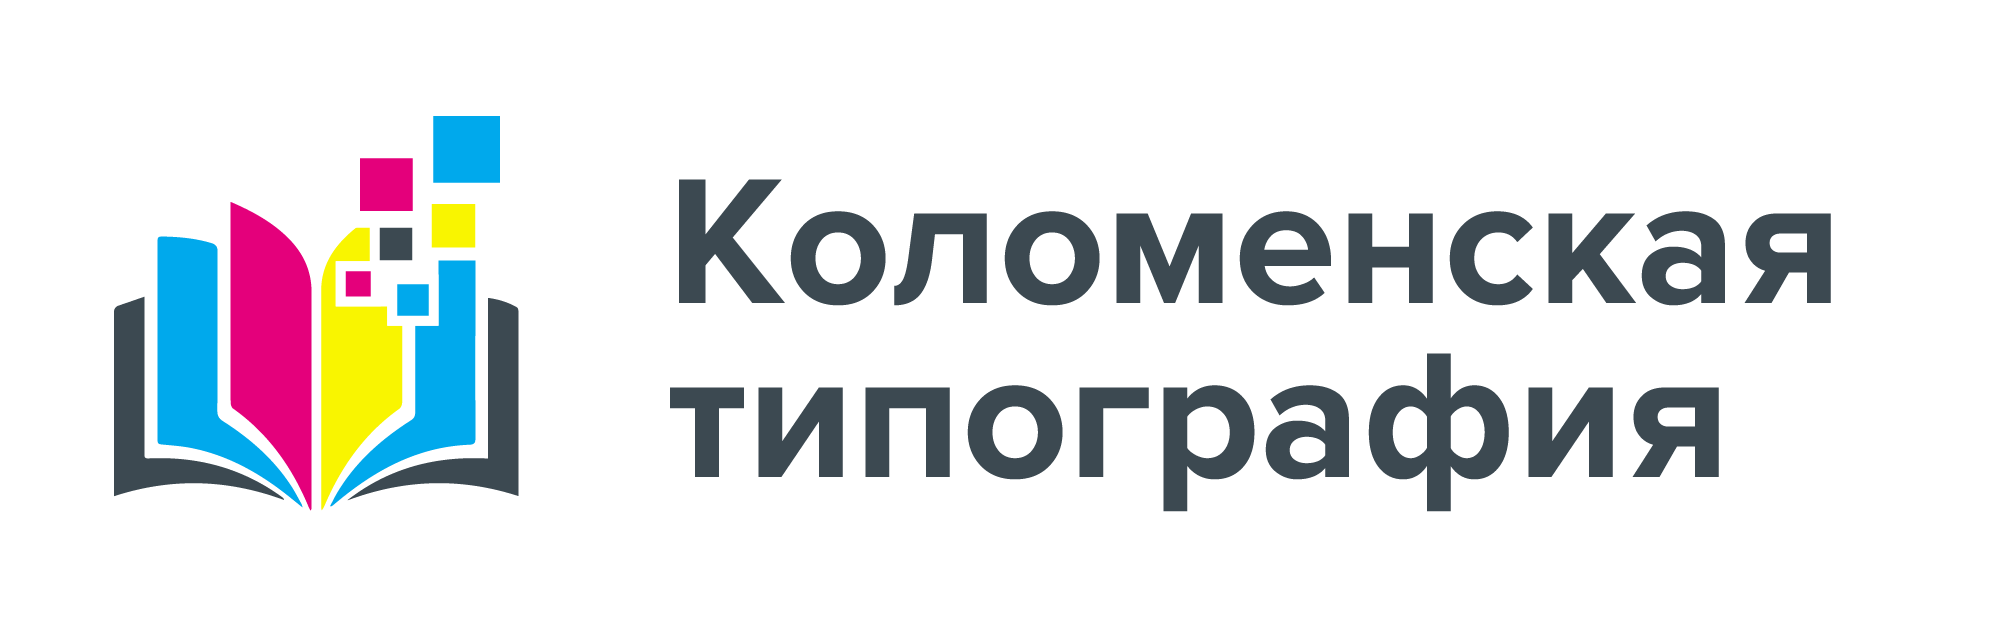 Коломенская типография